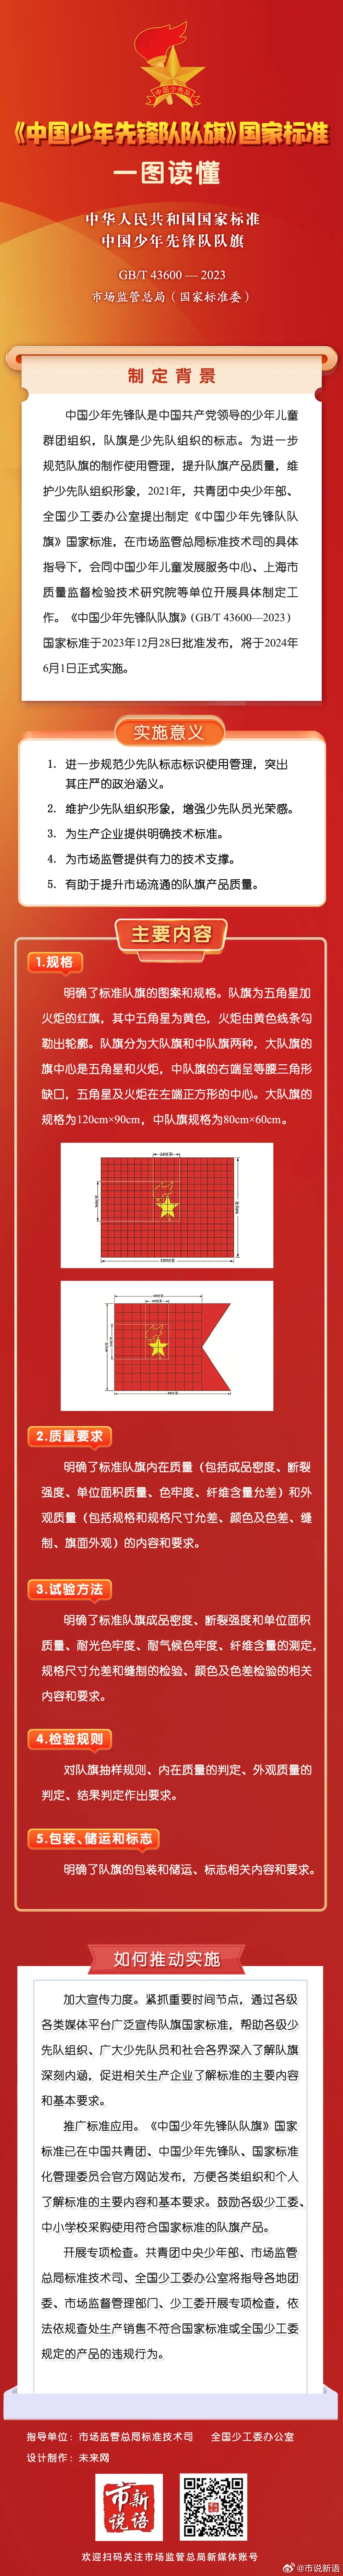 《中国少年先锋队队旗》国家标准将于6月1日正式实施